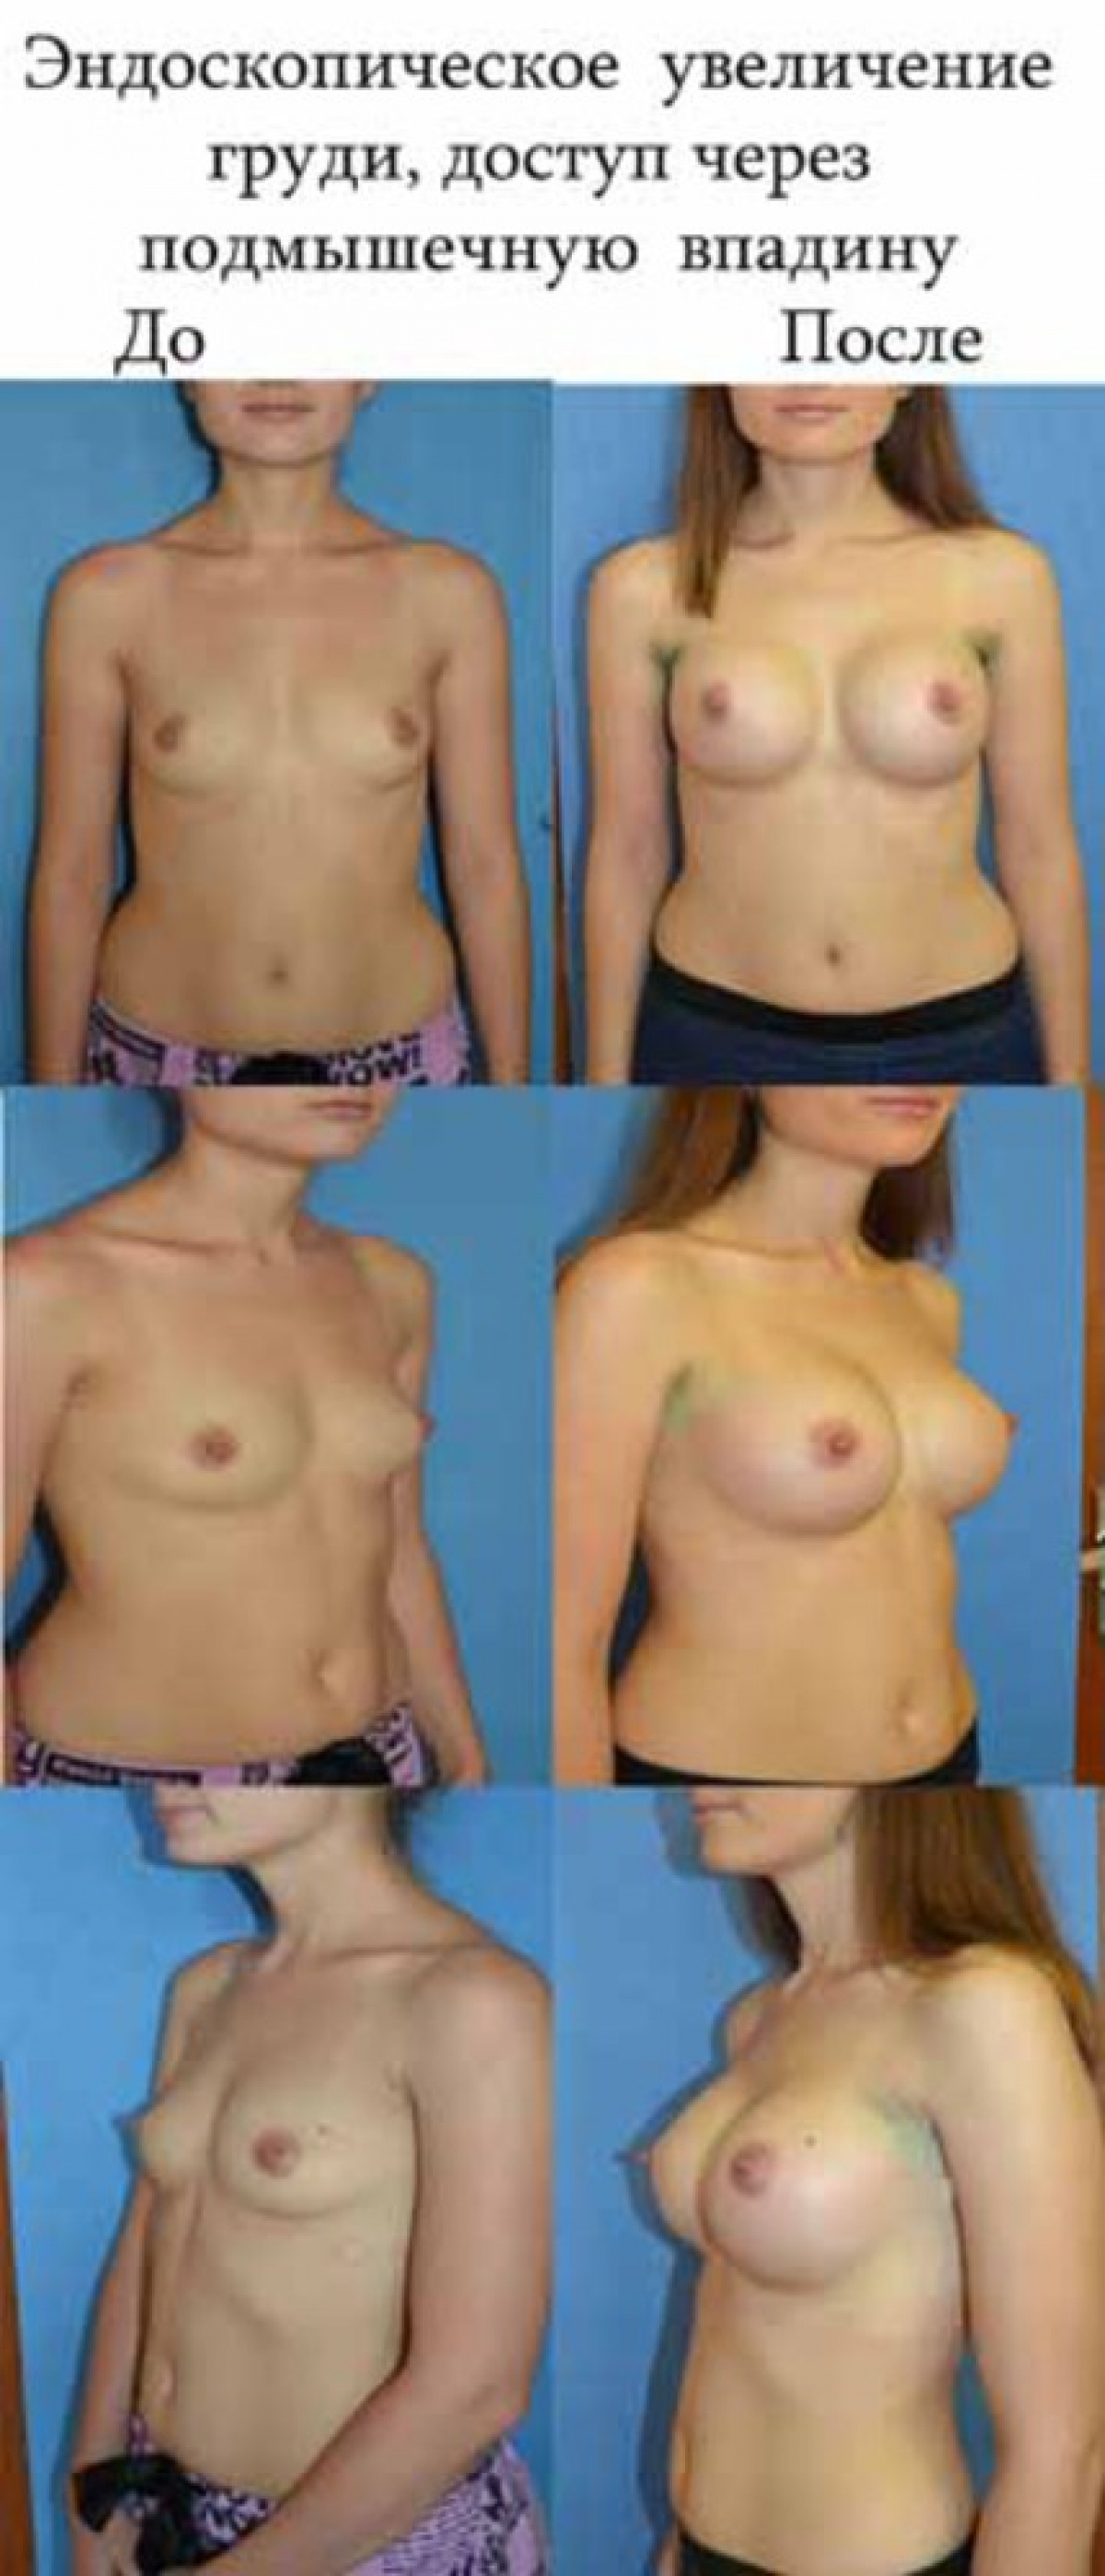 причина роста груди у женщин фото 9